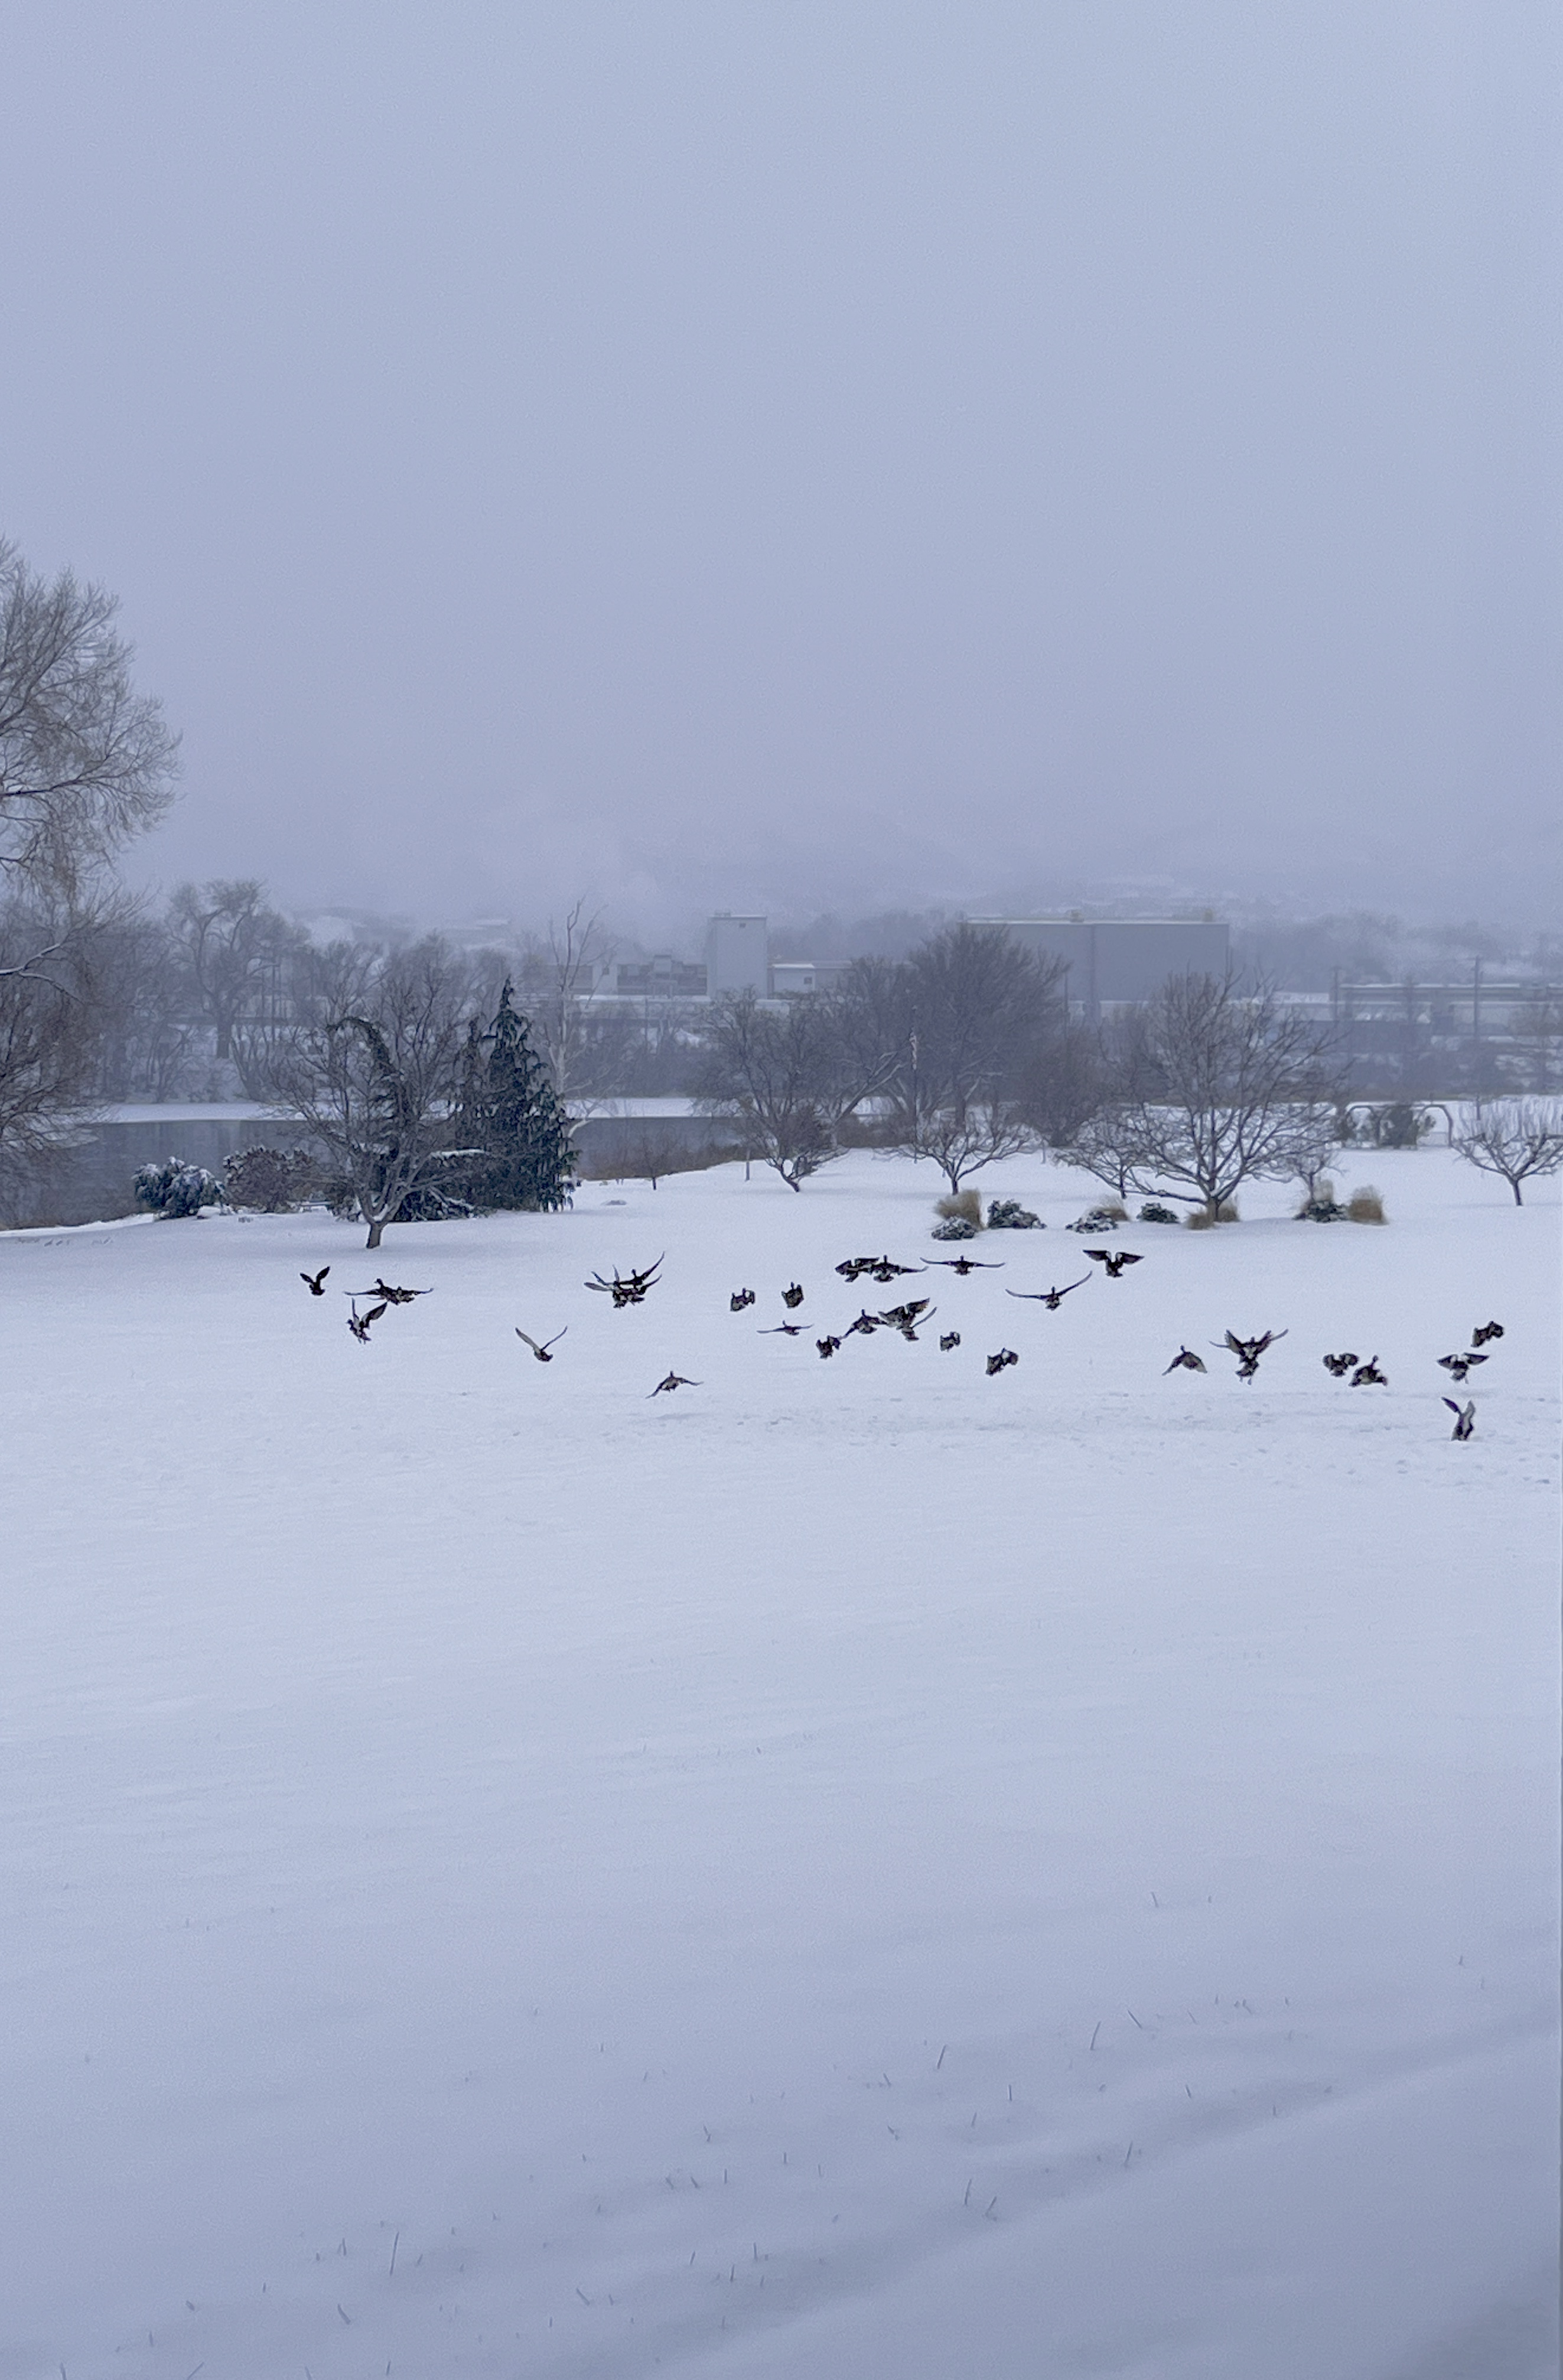 Ducks on Snow